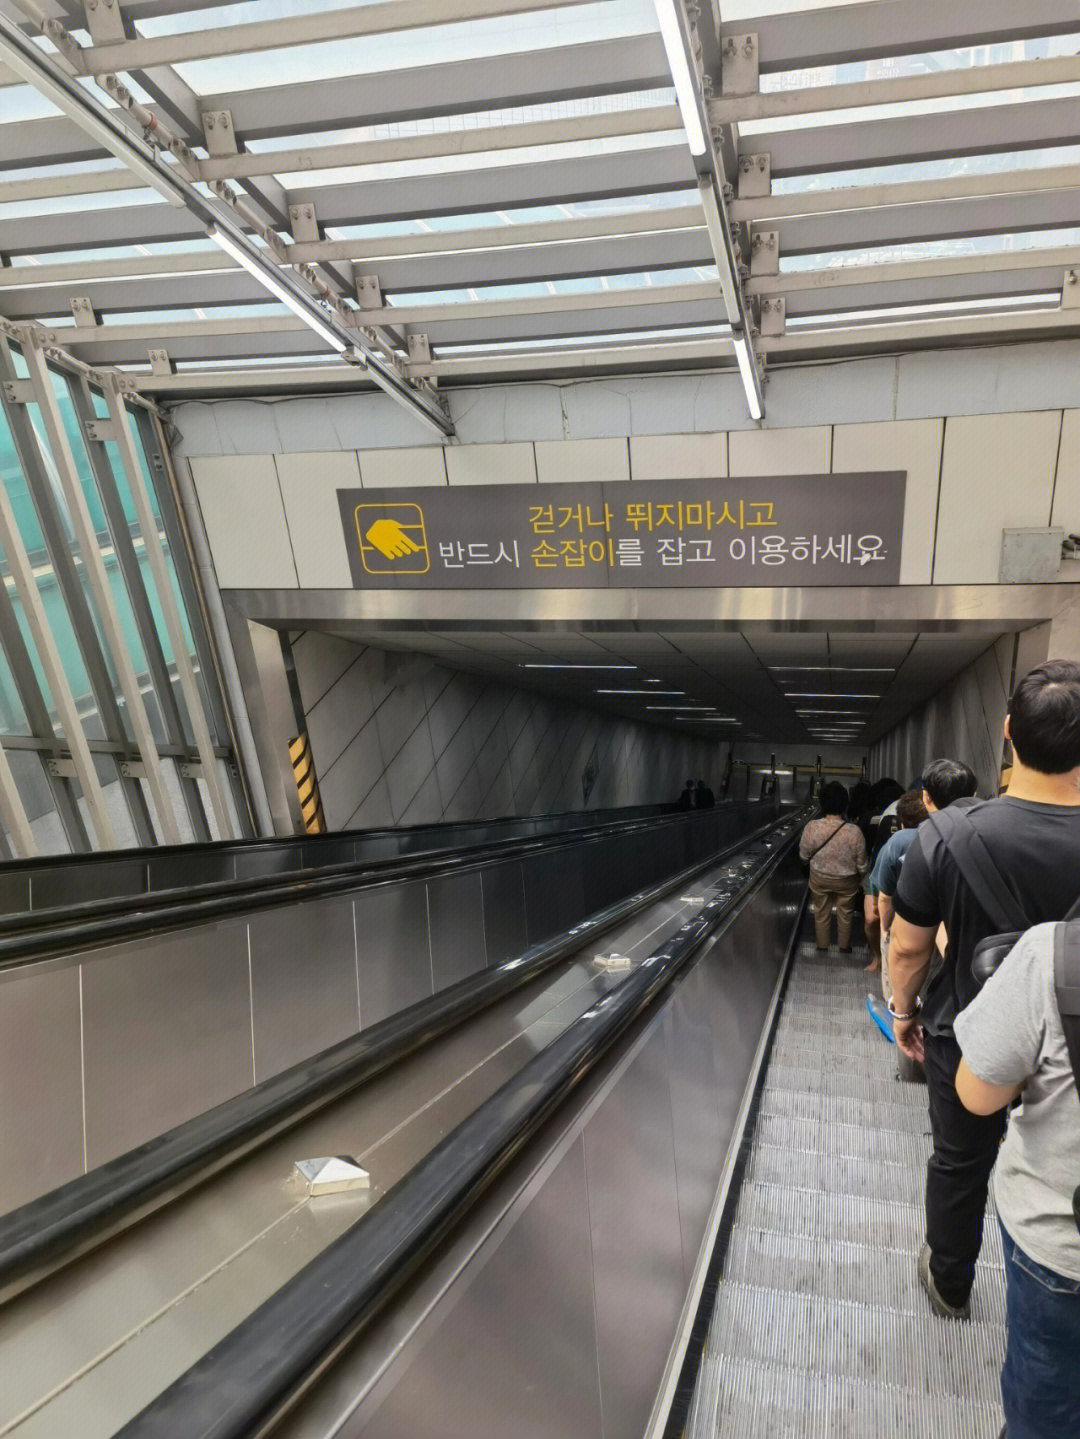 首尔地铁水仁线图片